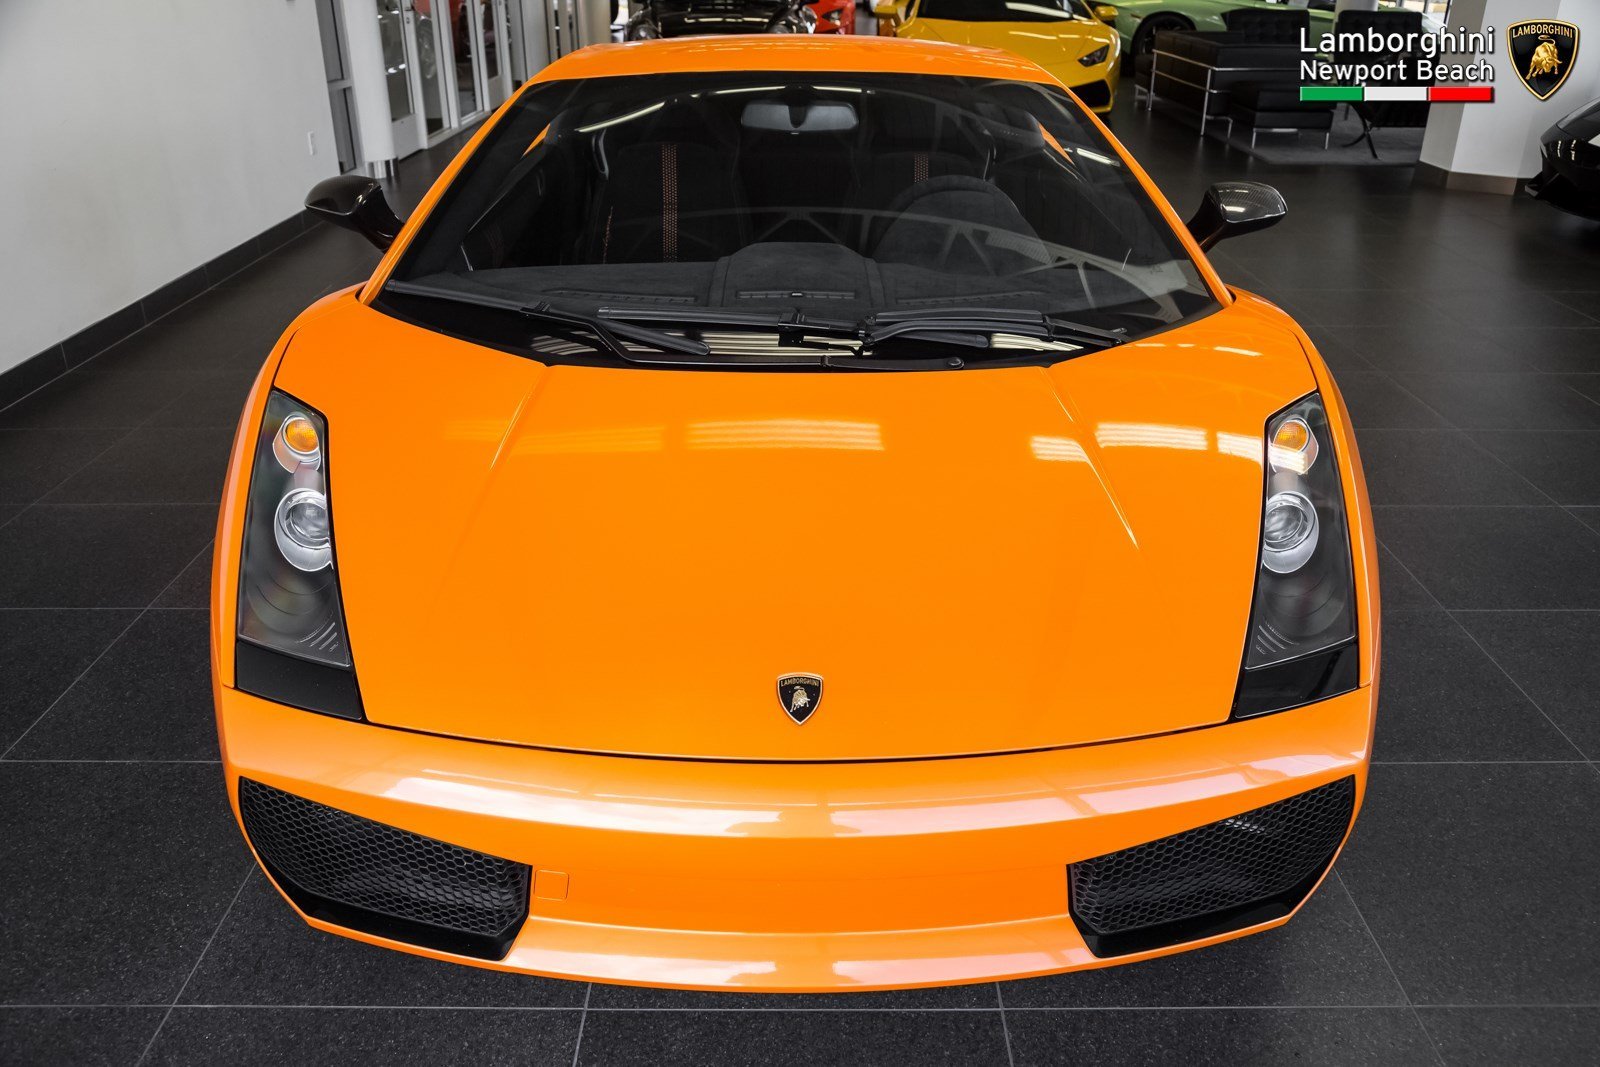 2008, Lamborghini, Gallardo, Superleggera, Cars, Orange Wallpaper